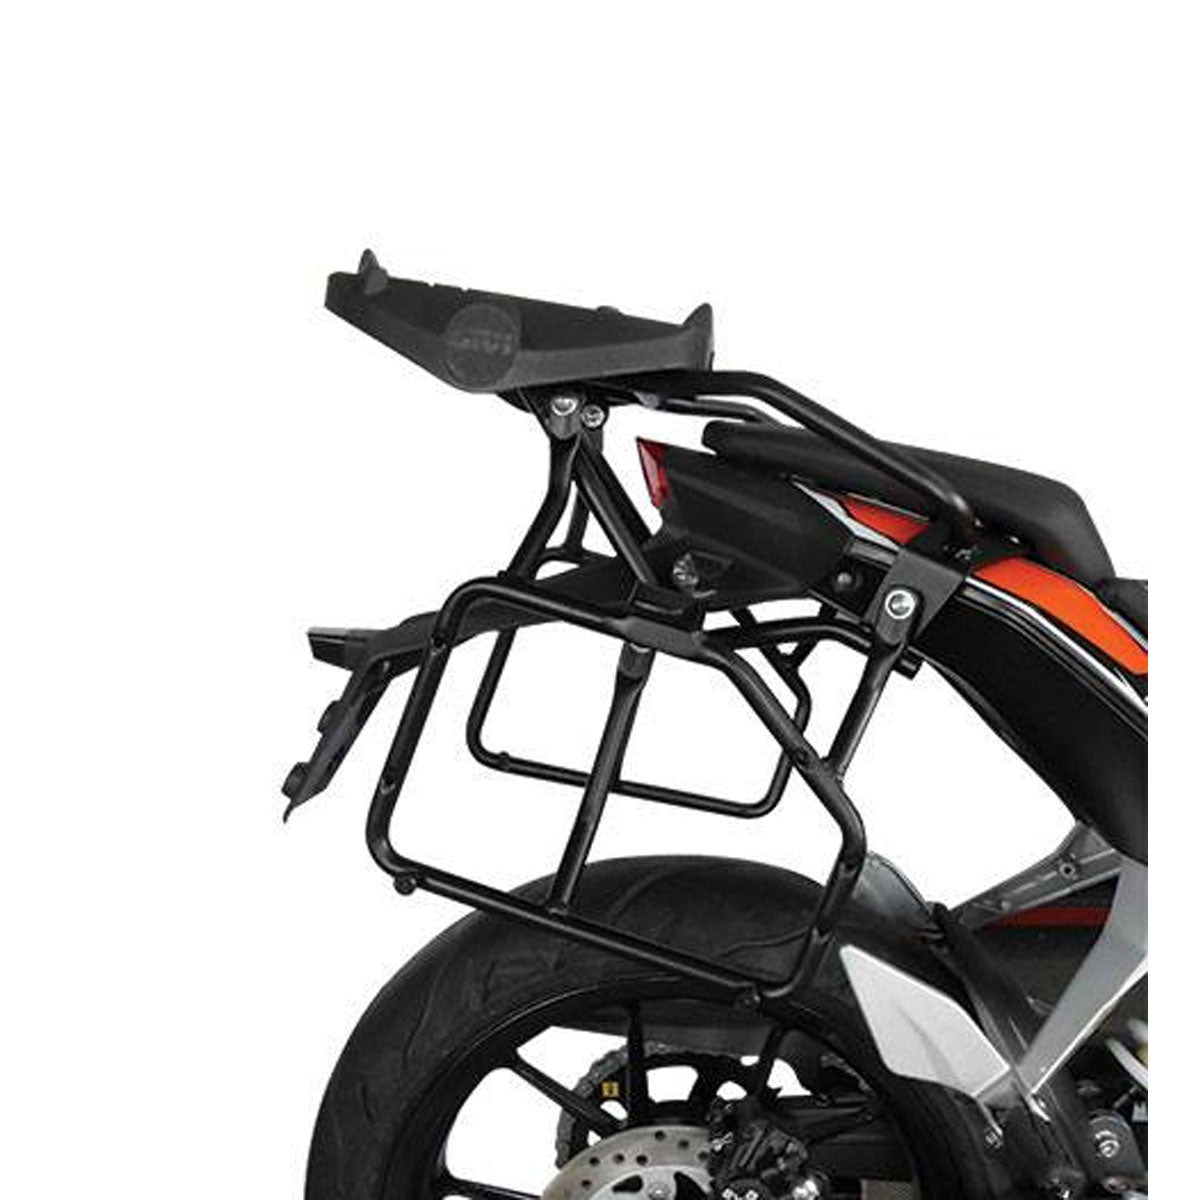 GIVI SIDE BAG HOLDER FOR KTM DUKE 200/390